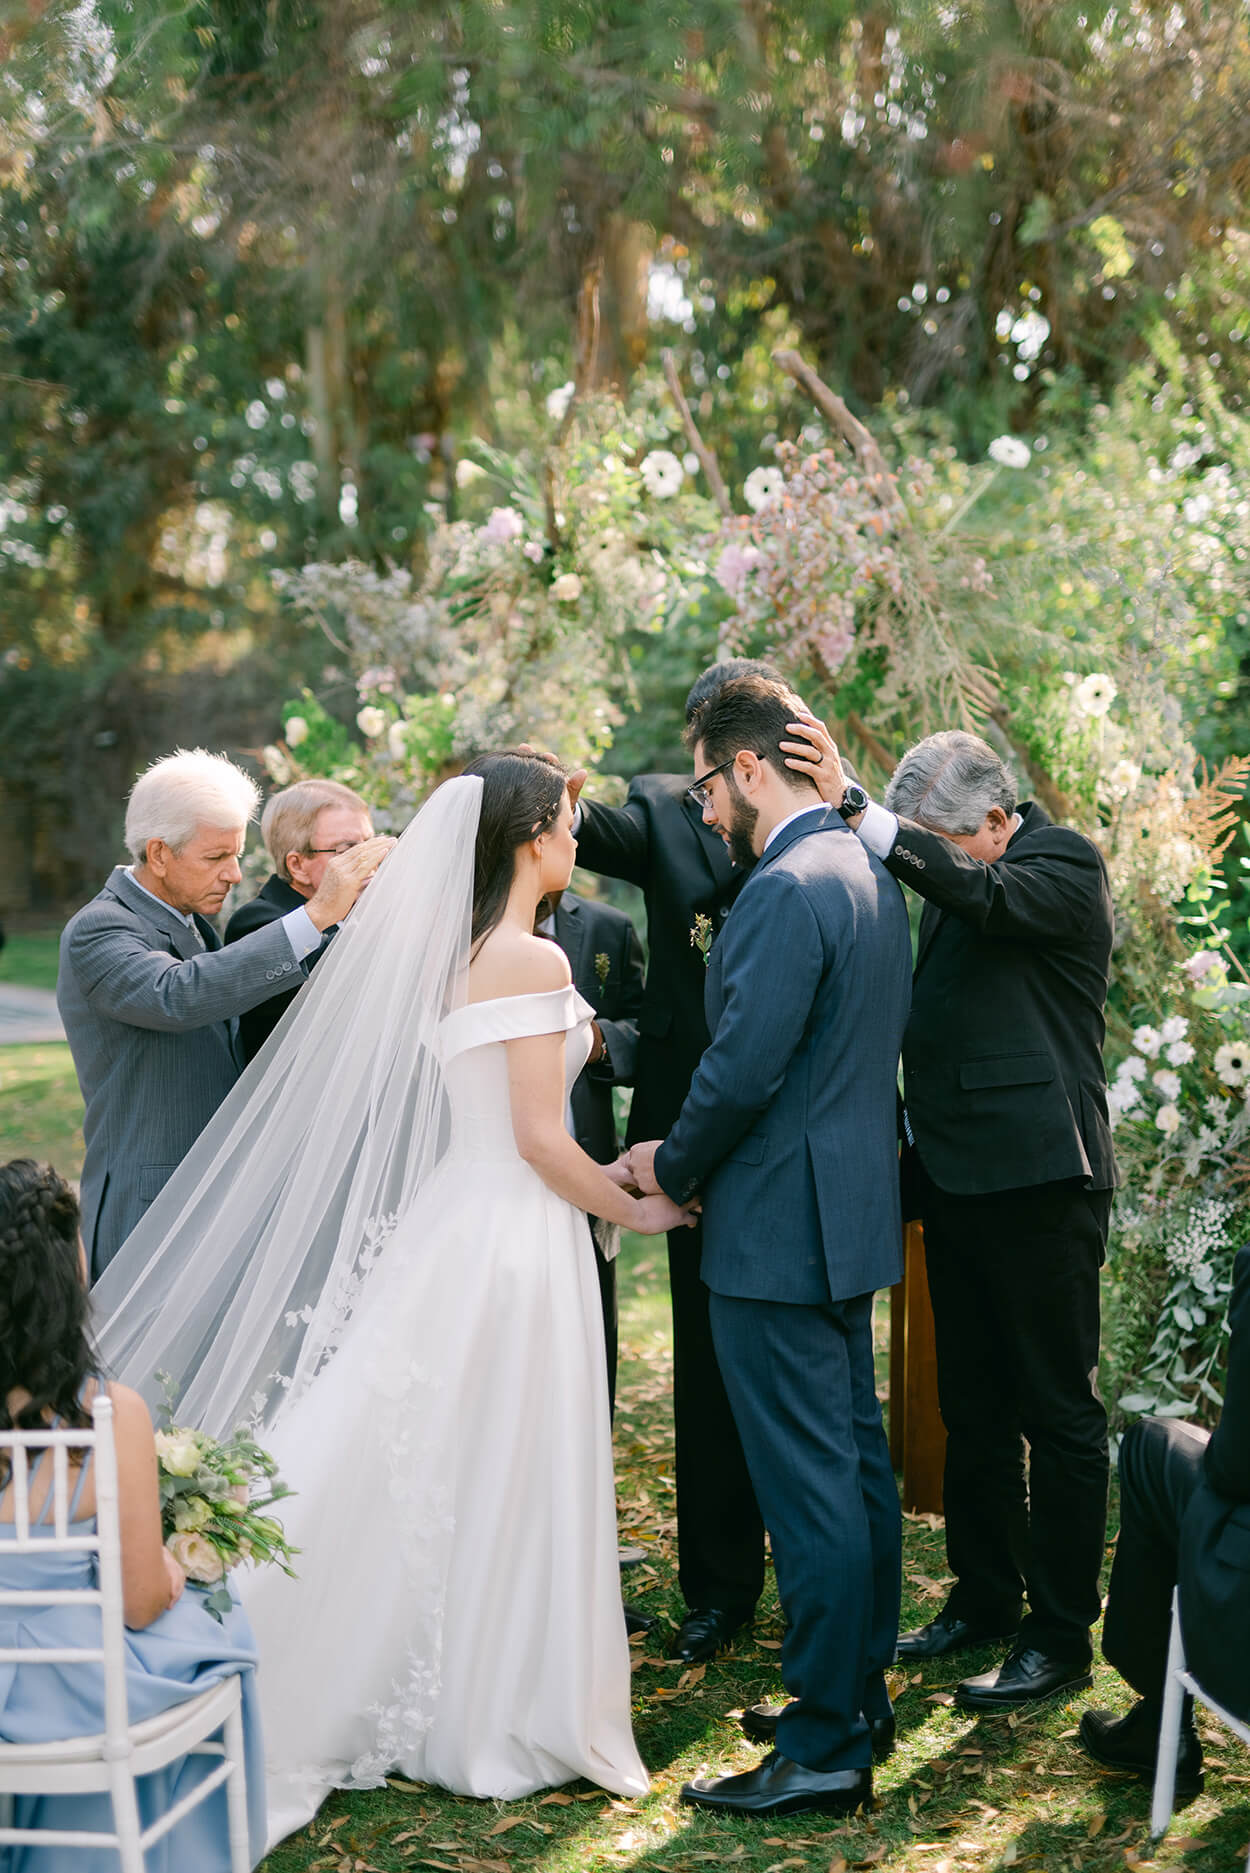 homens orando para os noivos durante a cerimônia de casamento